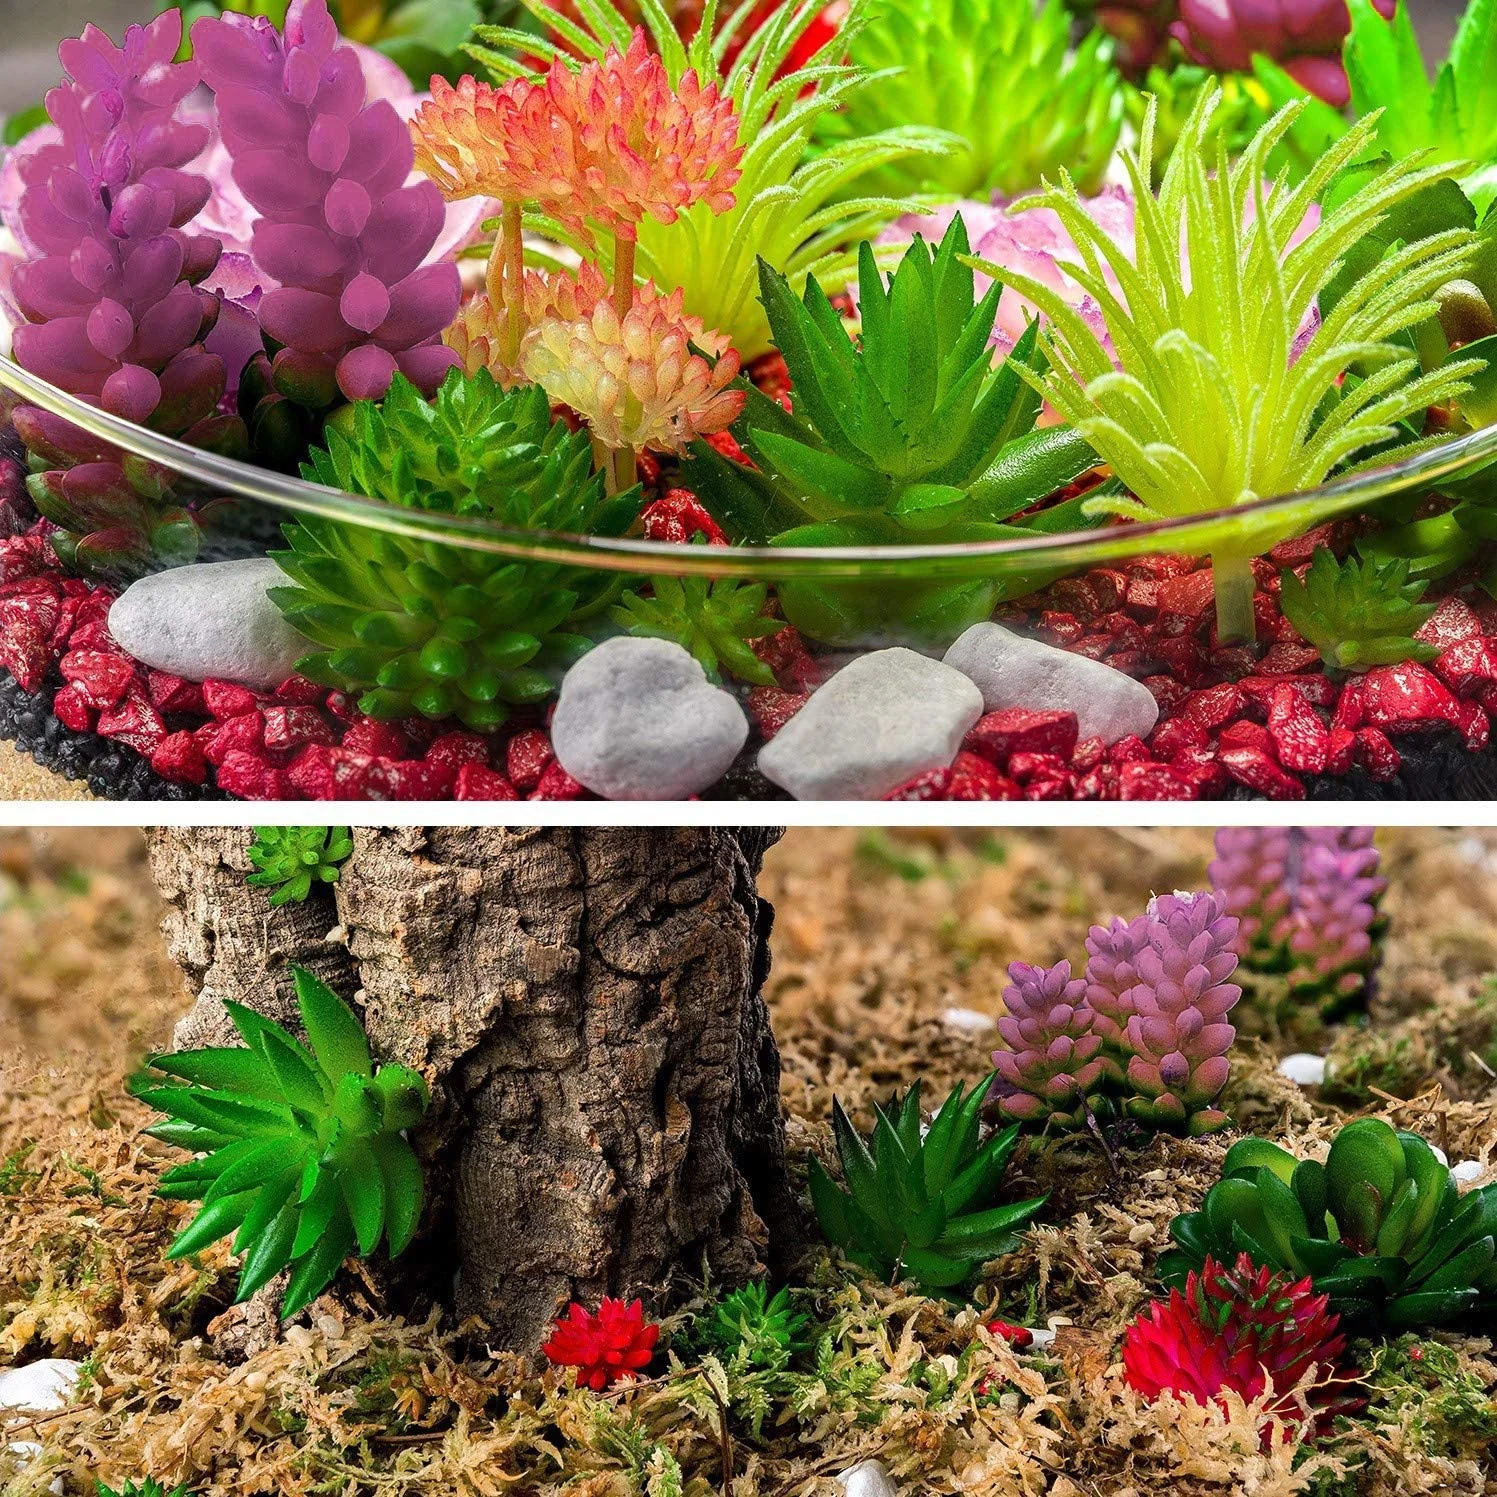 24pcs Artificial Succulent Plants Unpotted Picks Realistic Plastic Cactus Stems for Terrarium Bulk Faux Assorted Arrangements